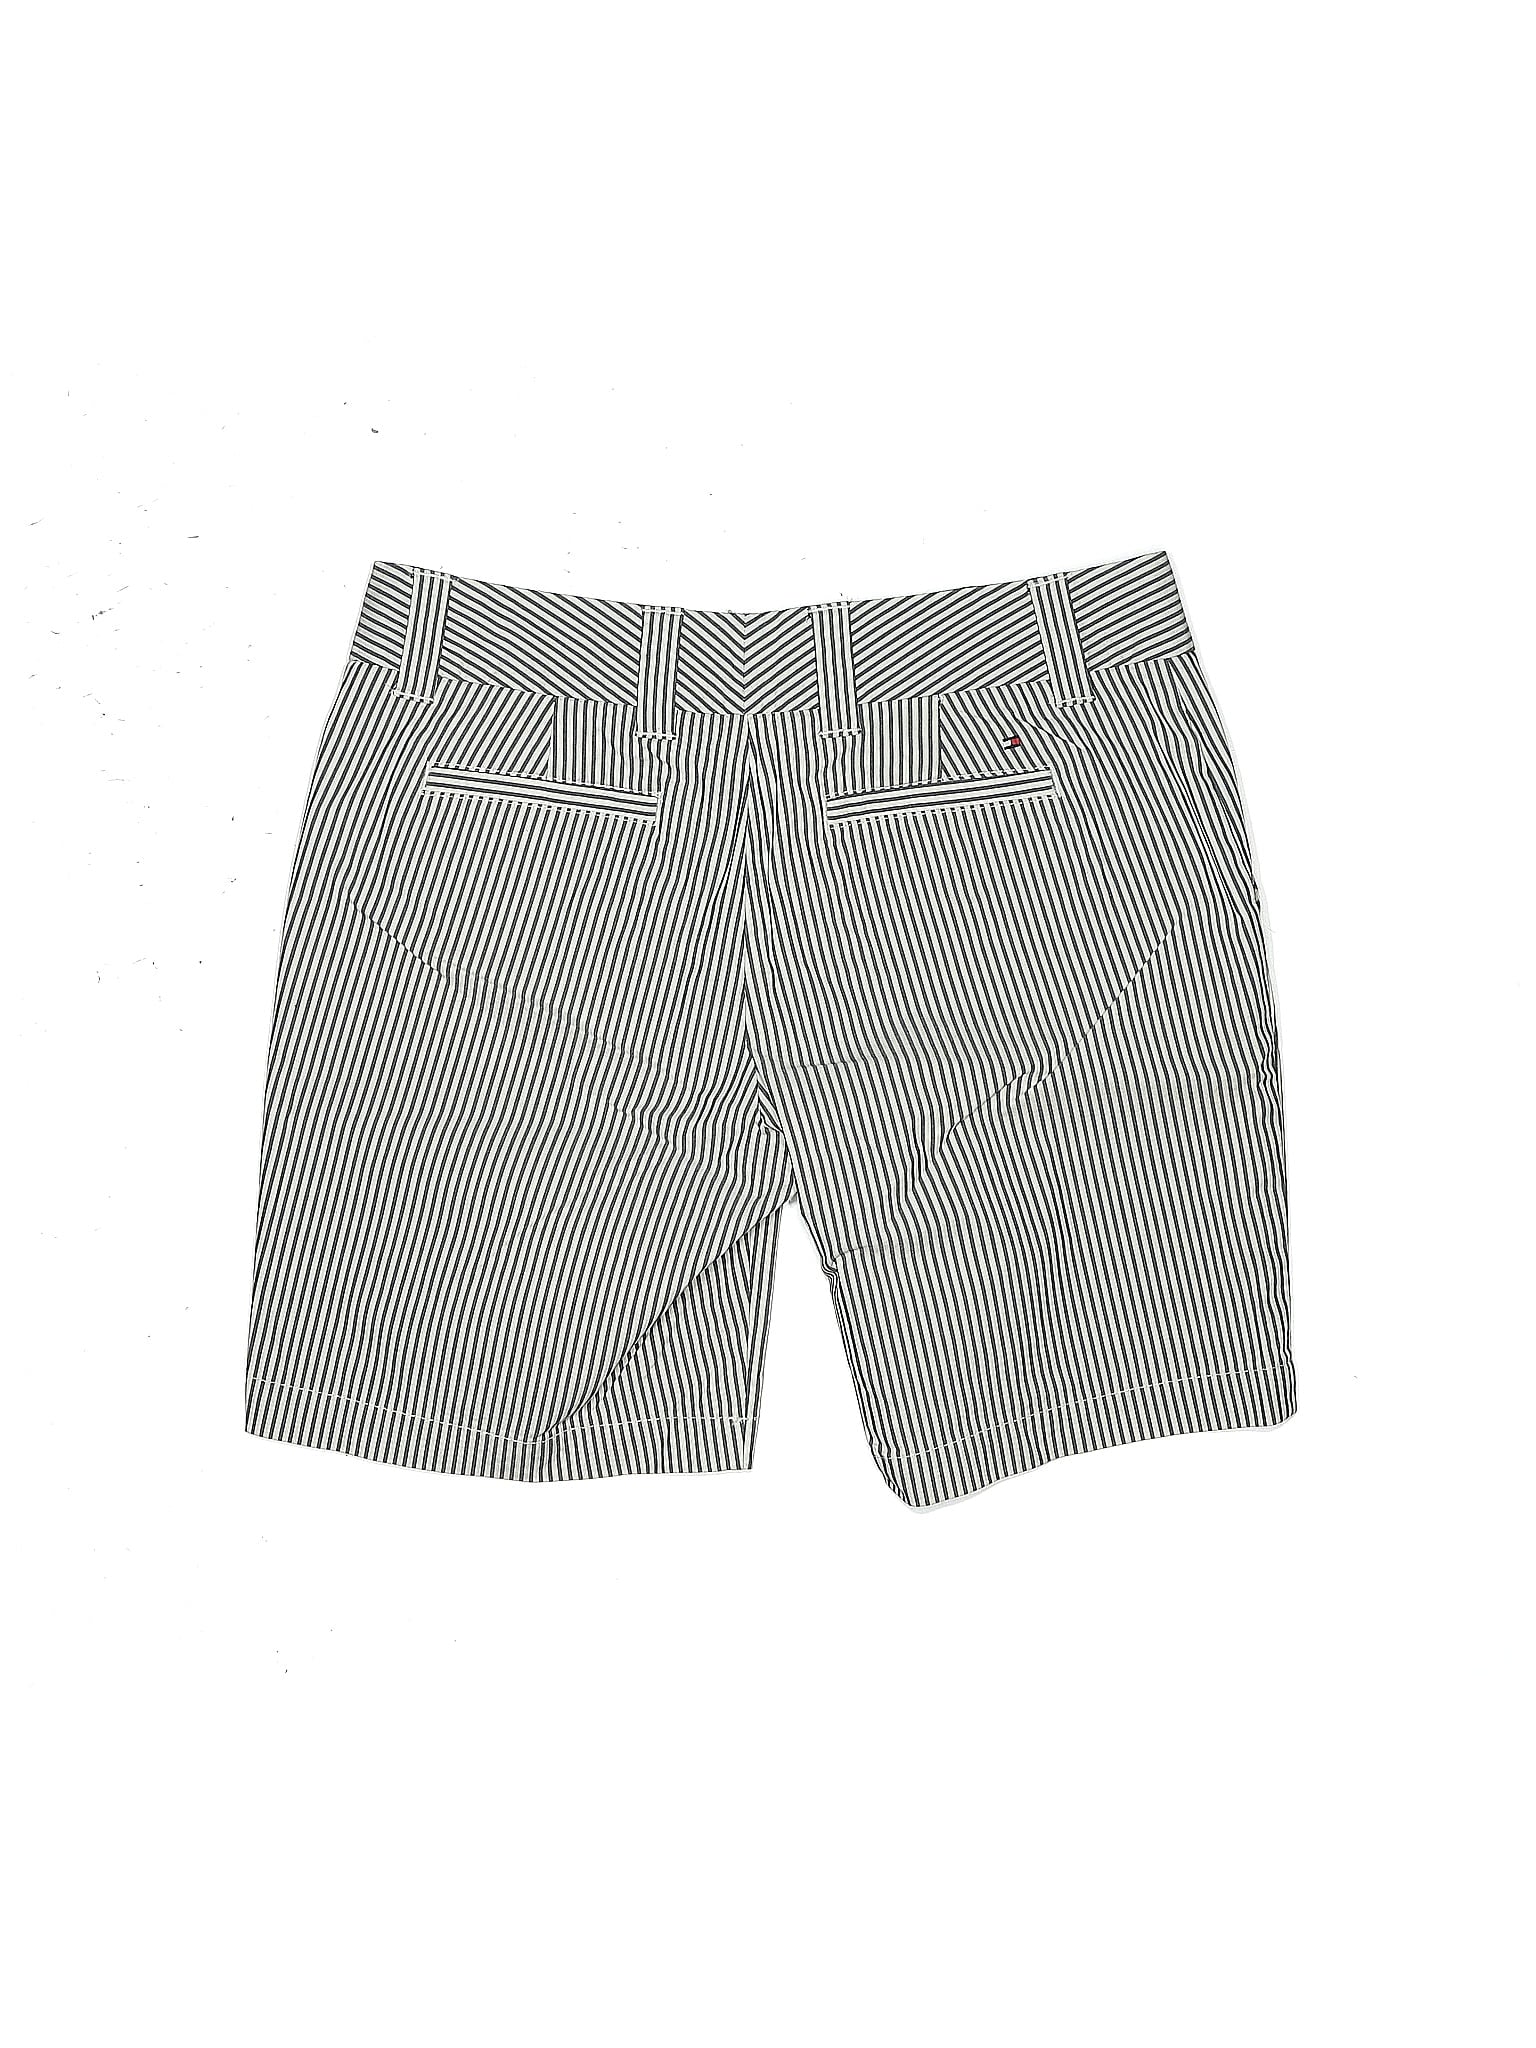 Khaki Shorts size - 6